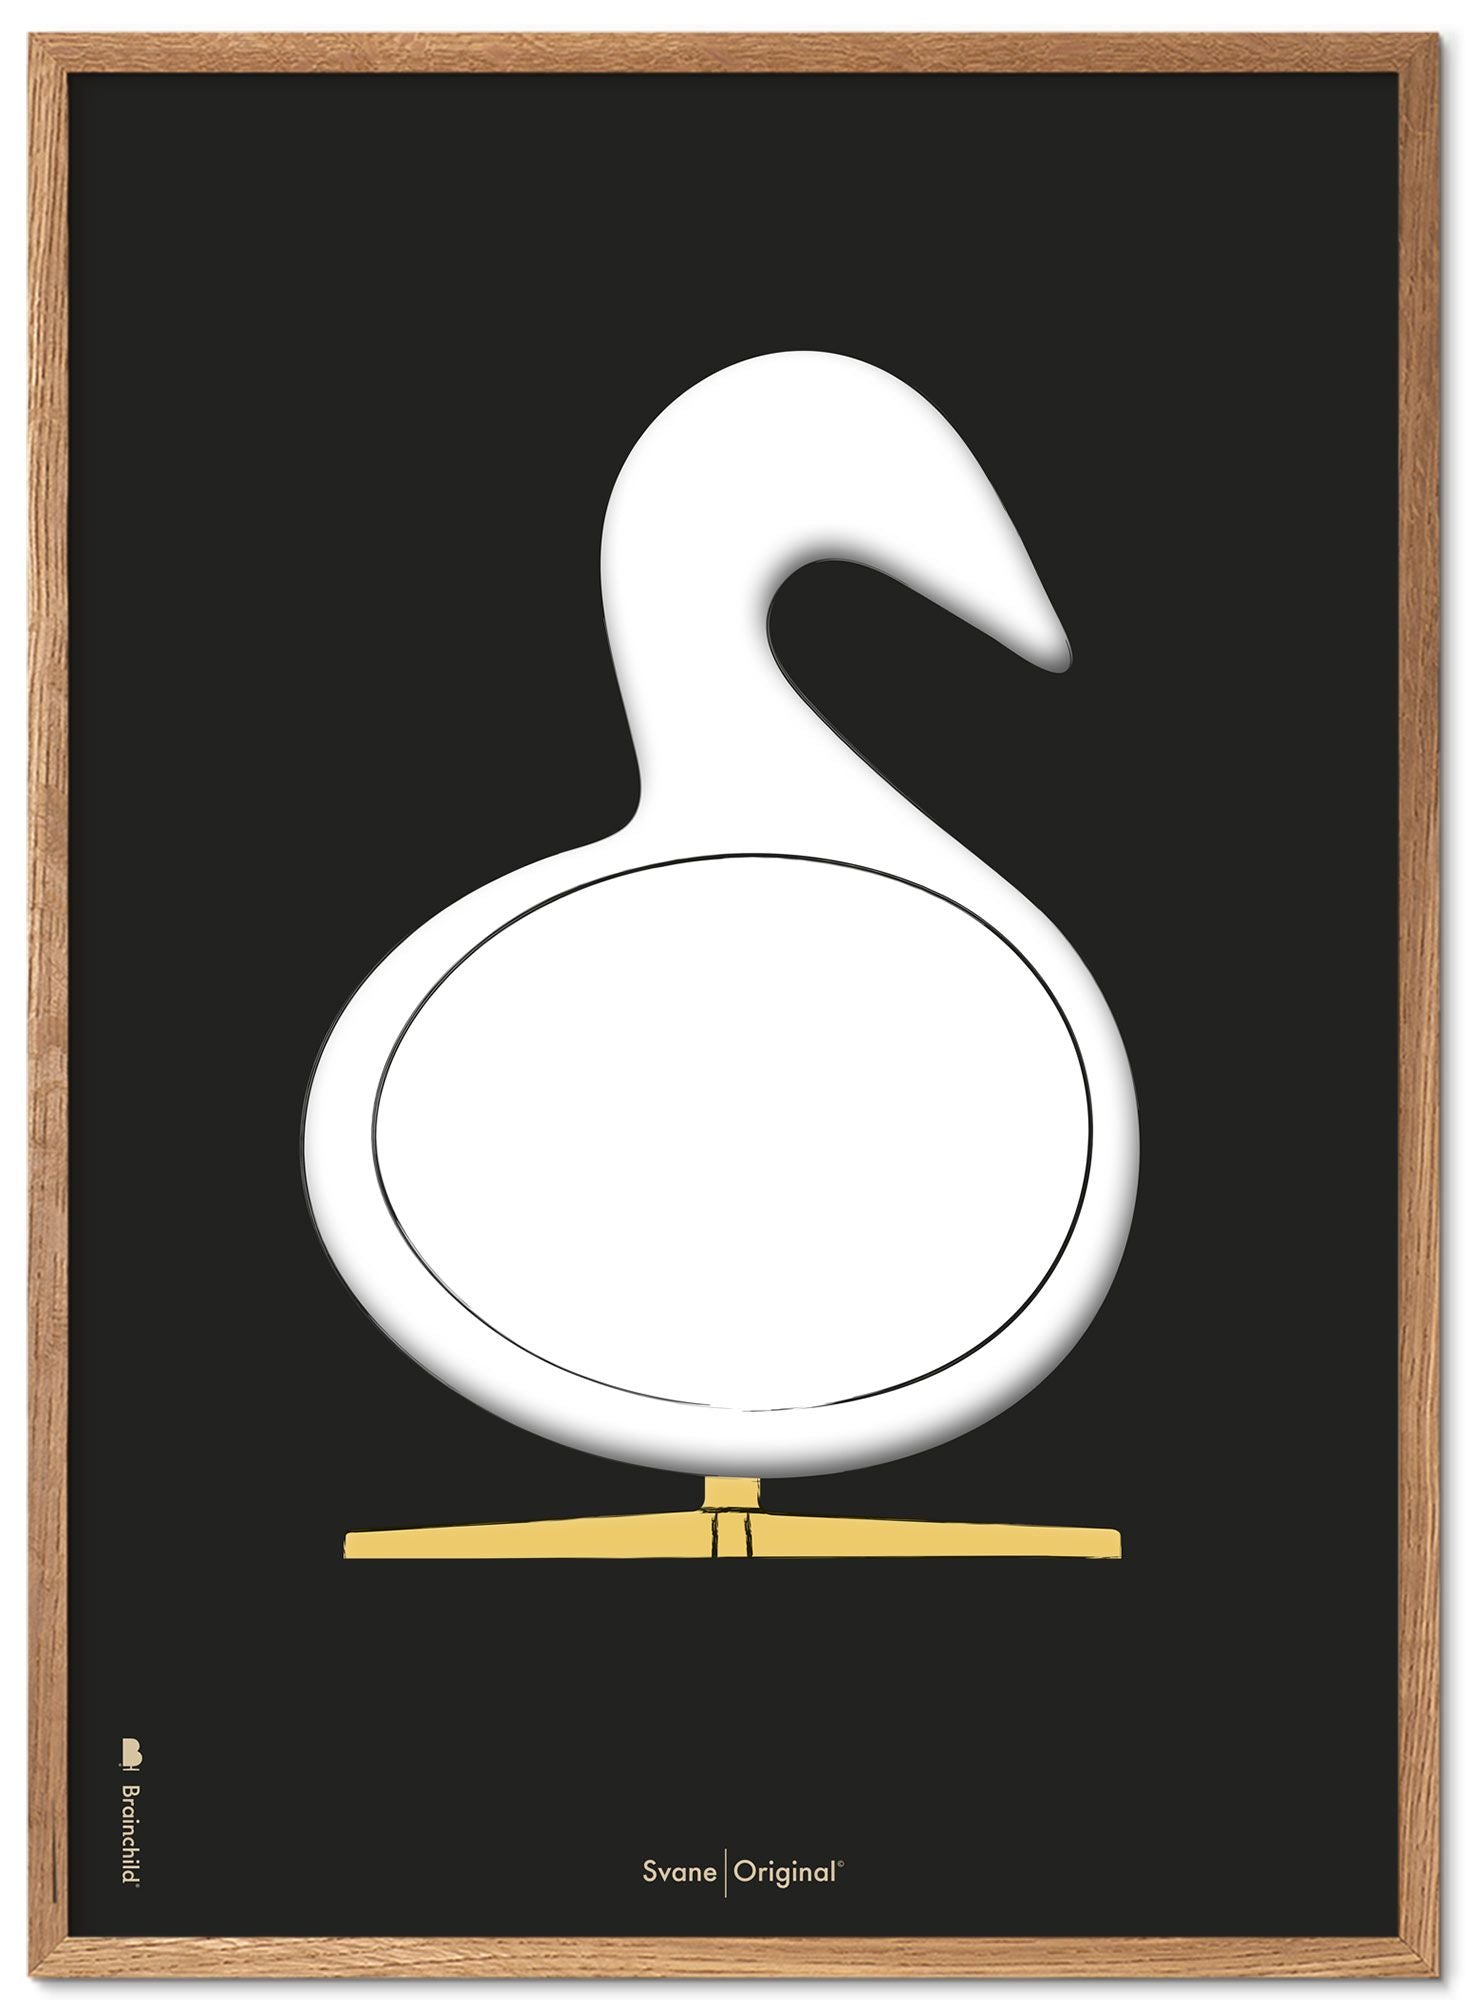 Brainchild Swan Design Sketch Poster Frame gjord av lätt trä 50x70 cm, svart bakgrund